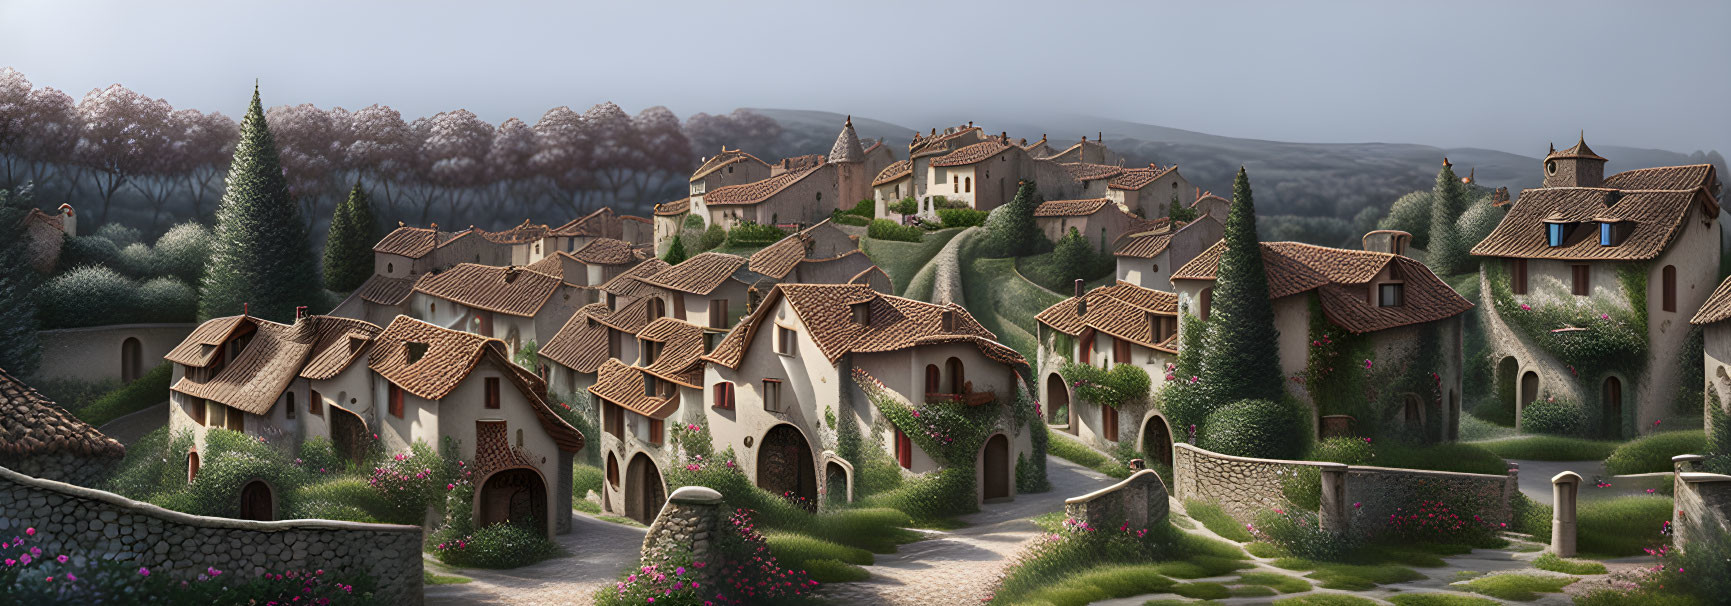 a small village